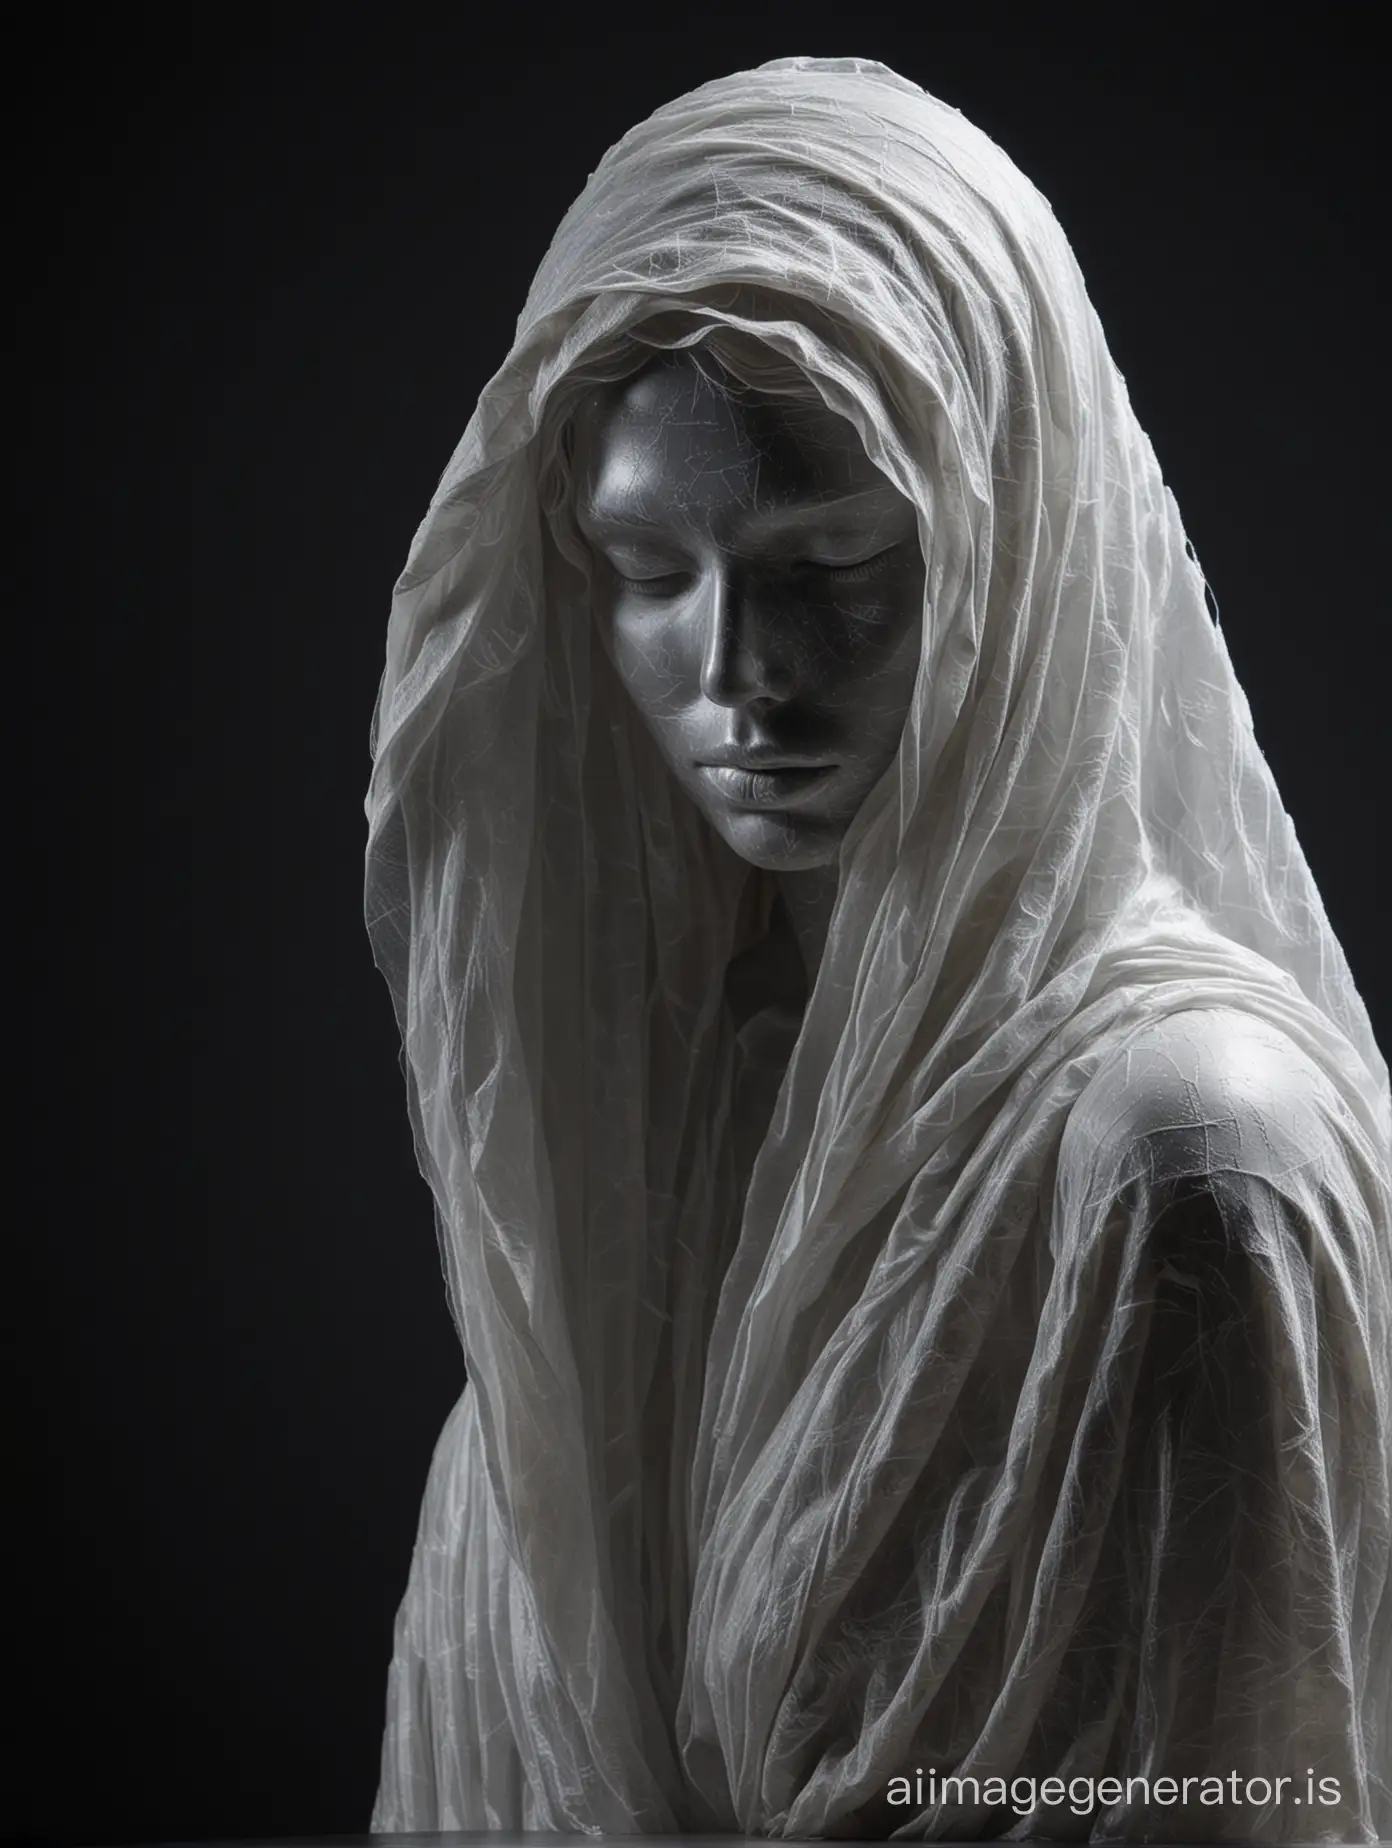 скульптура женщины из мрамора, лицо закрывает прозрачная ткань  на темном фоне, смотрит отчужденно, задумчиво, грустно